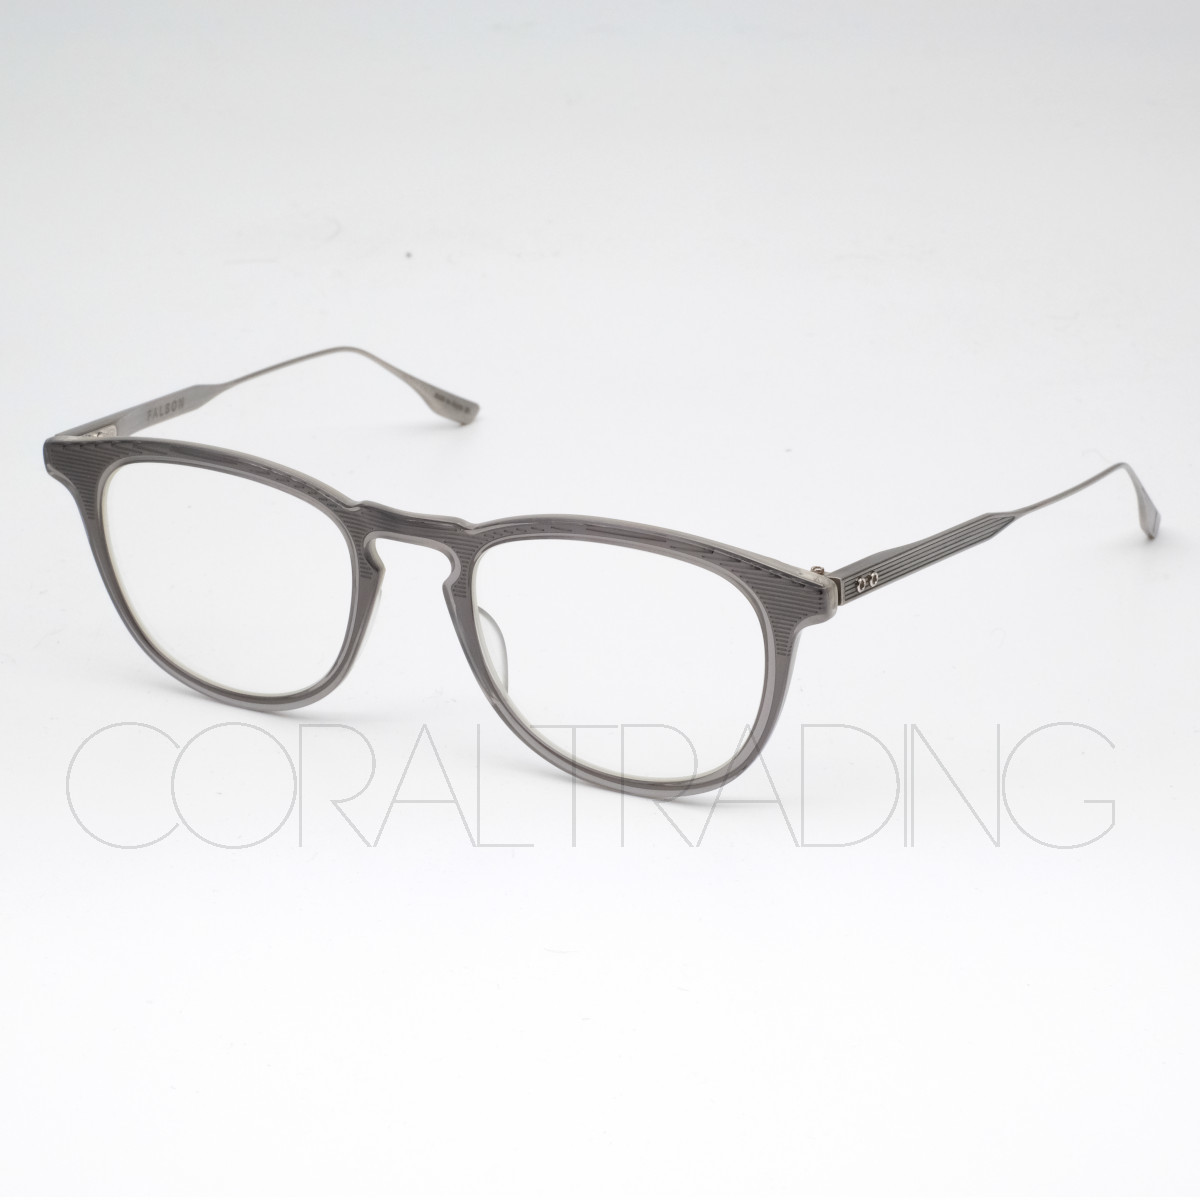 23199★新品本物！DITA FALSON DTX105 グレー/シルバー コンビネーションフレーム キーホールブリッジ メガネ 眼鏡 日本製  チタンテンプル